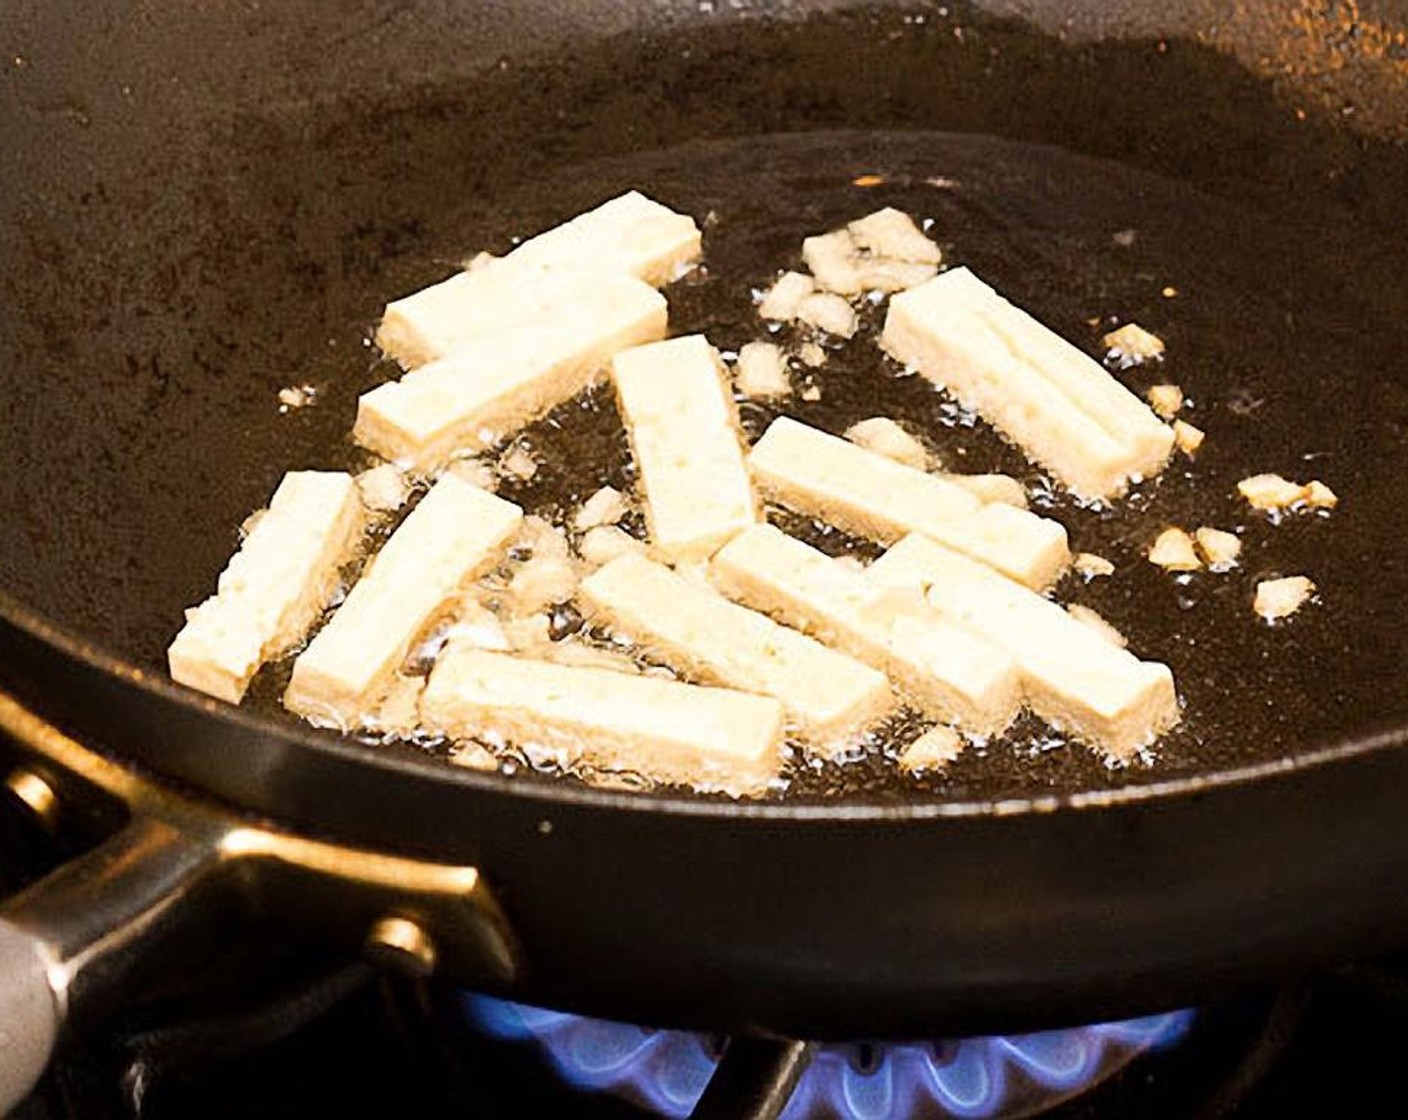 Schritt 8 Tofu und Knoblauch hinzufügen. Etwa 45 Sekunden anbraten, dabei häufig umrühren. Der Knoblauch sollte leicht braun werden, darf aber nicht verbrennen!